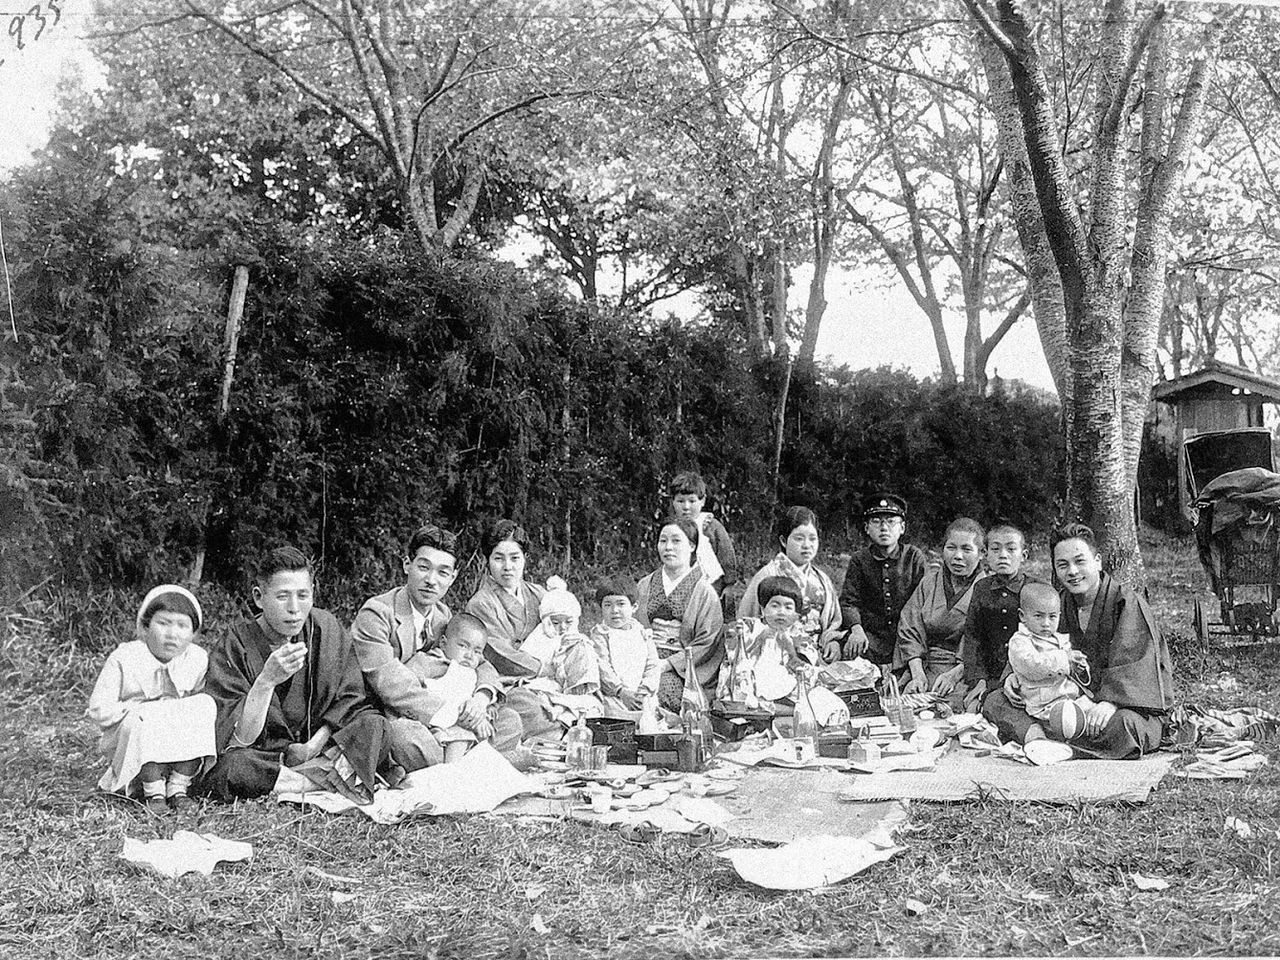 التقطت الصورة في أحد الأماكن الشهيرة لمشاهدة الساكورا في ربيع عام 1935، وتوضح الاستمتاع بالهانامي، أو مشاهدة الساكورا في حديقة تشوجوئين. يظهر الصبي هاماي توكوسو، مرتديًا طاقية من الصوف بينما تحتضنه والدته، وهي الشخص الرابع من اليسار. الصورة مقدمة من هاماي توكوسو.